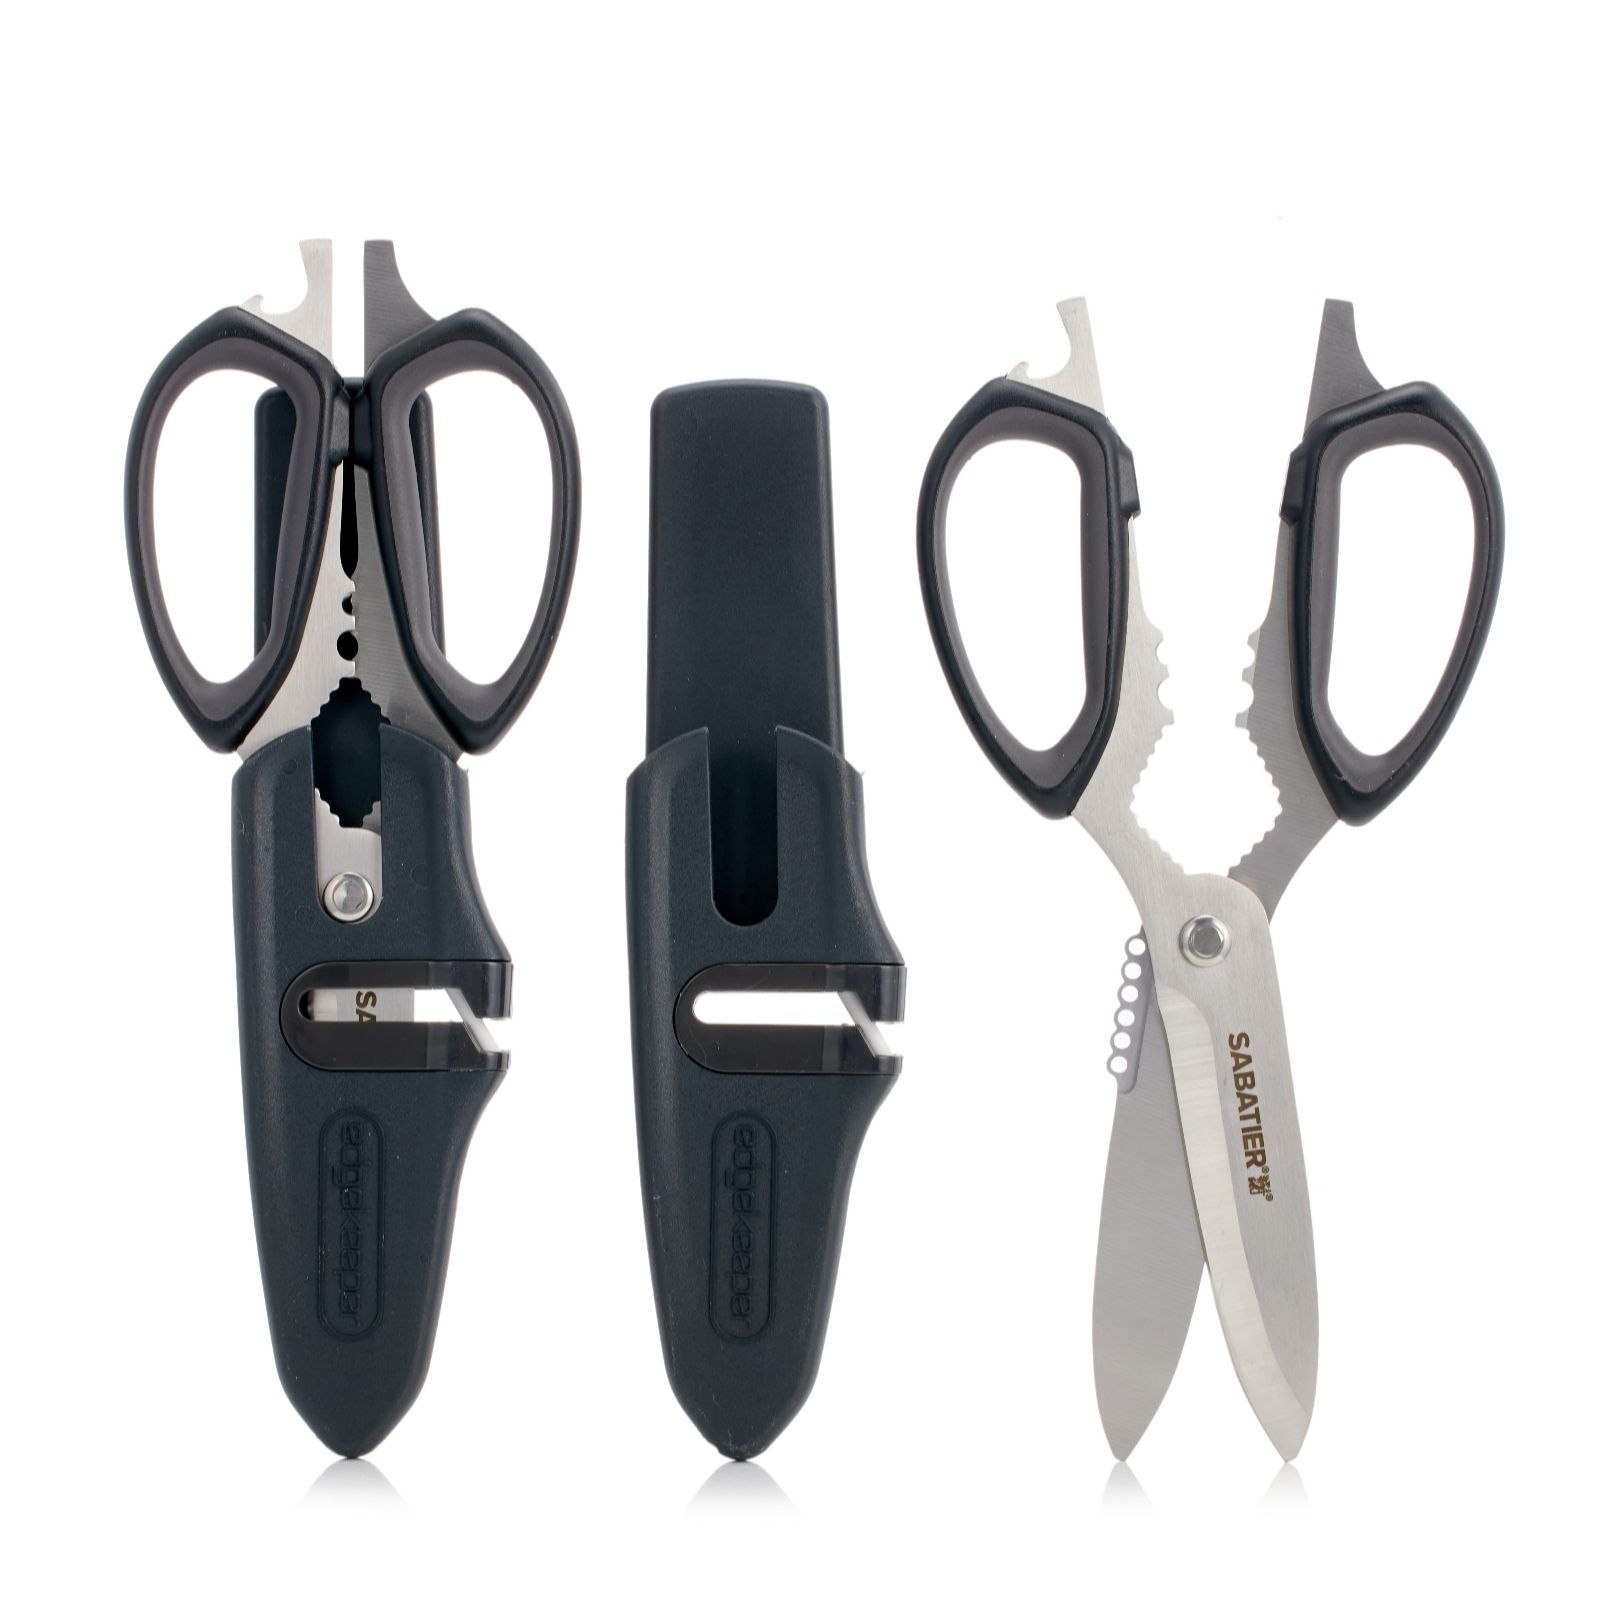 Sabatier Set of 2 10 in 1 Multifunctional Scissors - QVC UK